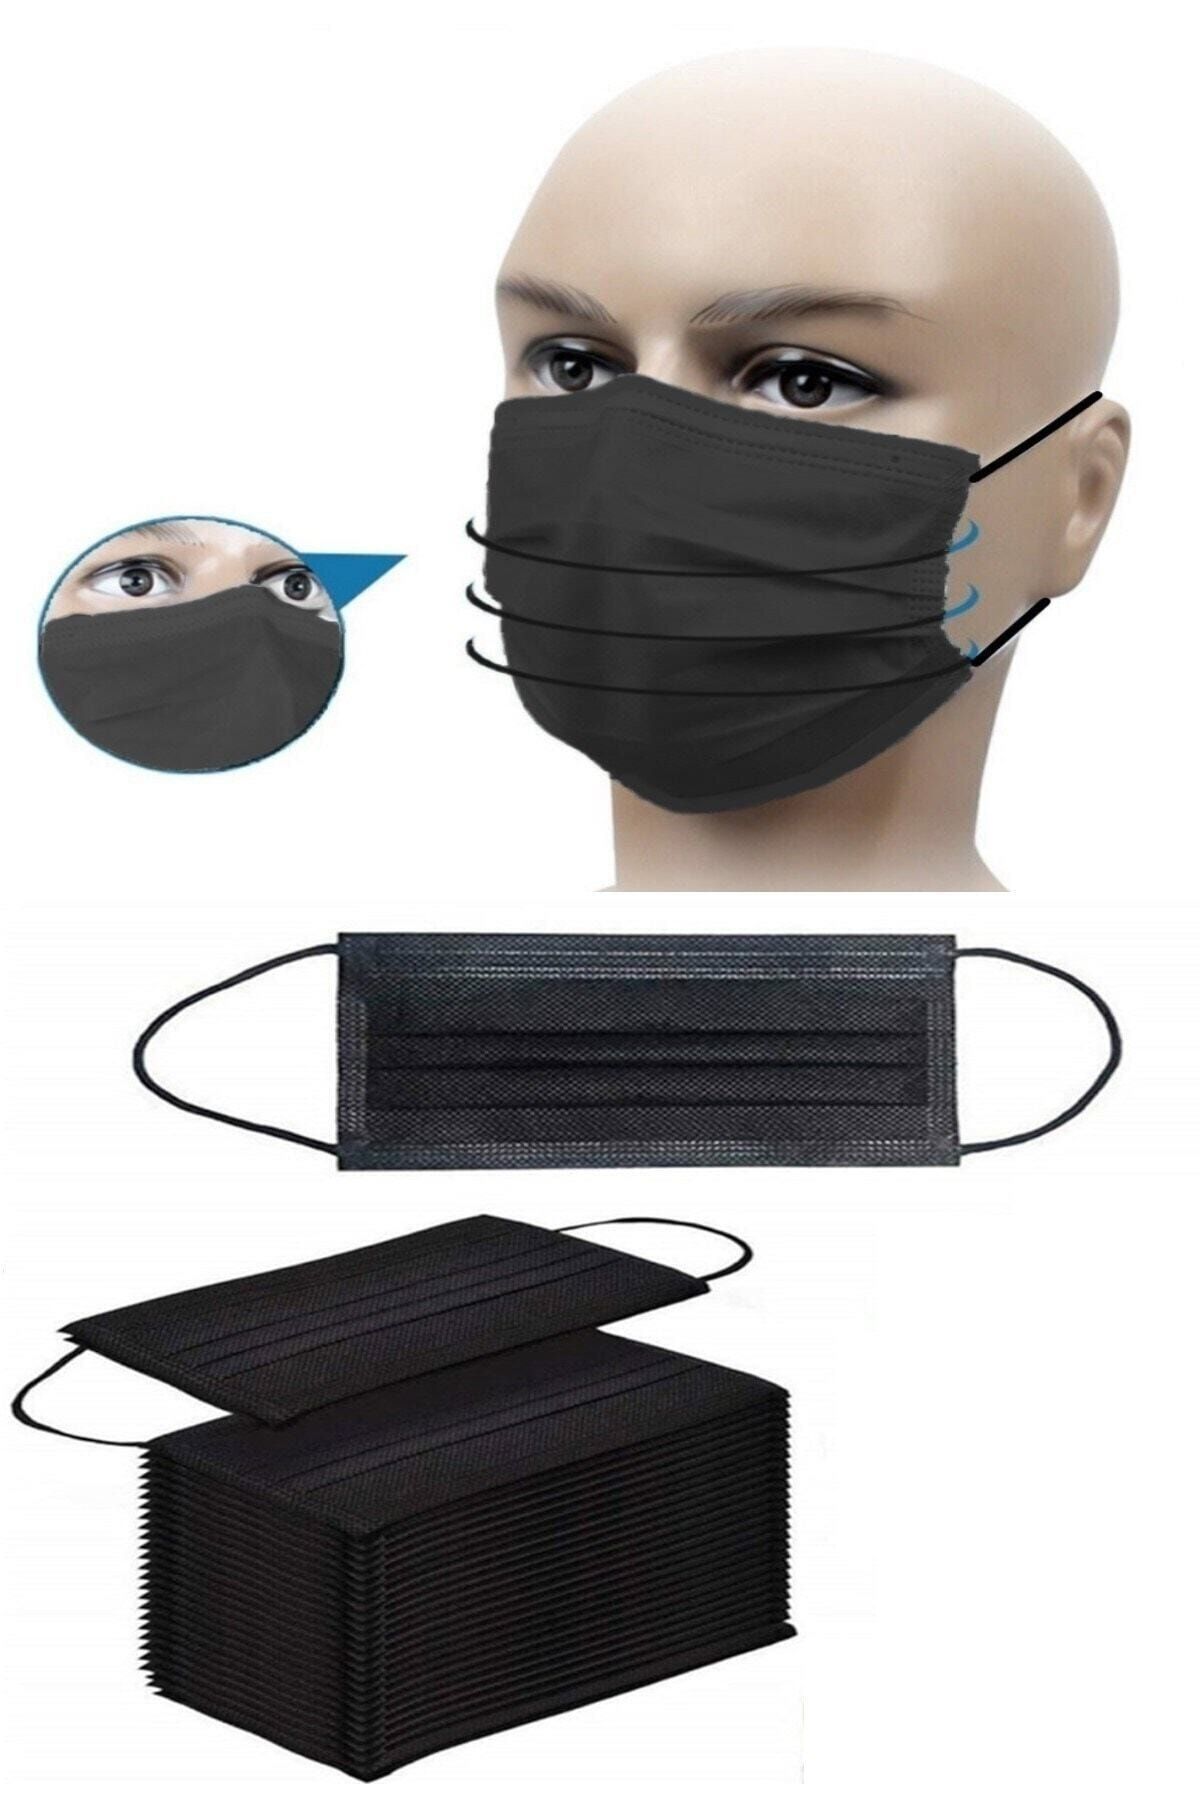 RoseRoi Cerrahi Maske 3 Katlı Telli 50'lili Kutu Medikal Siyah Yüz Maskesi